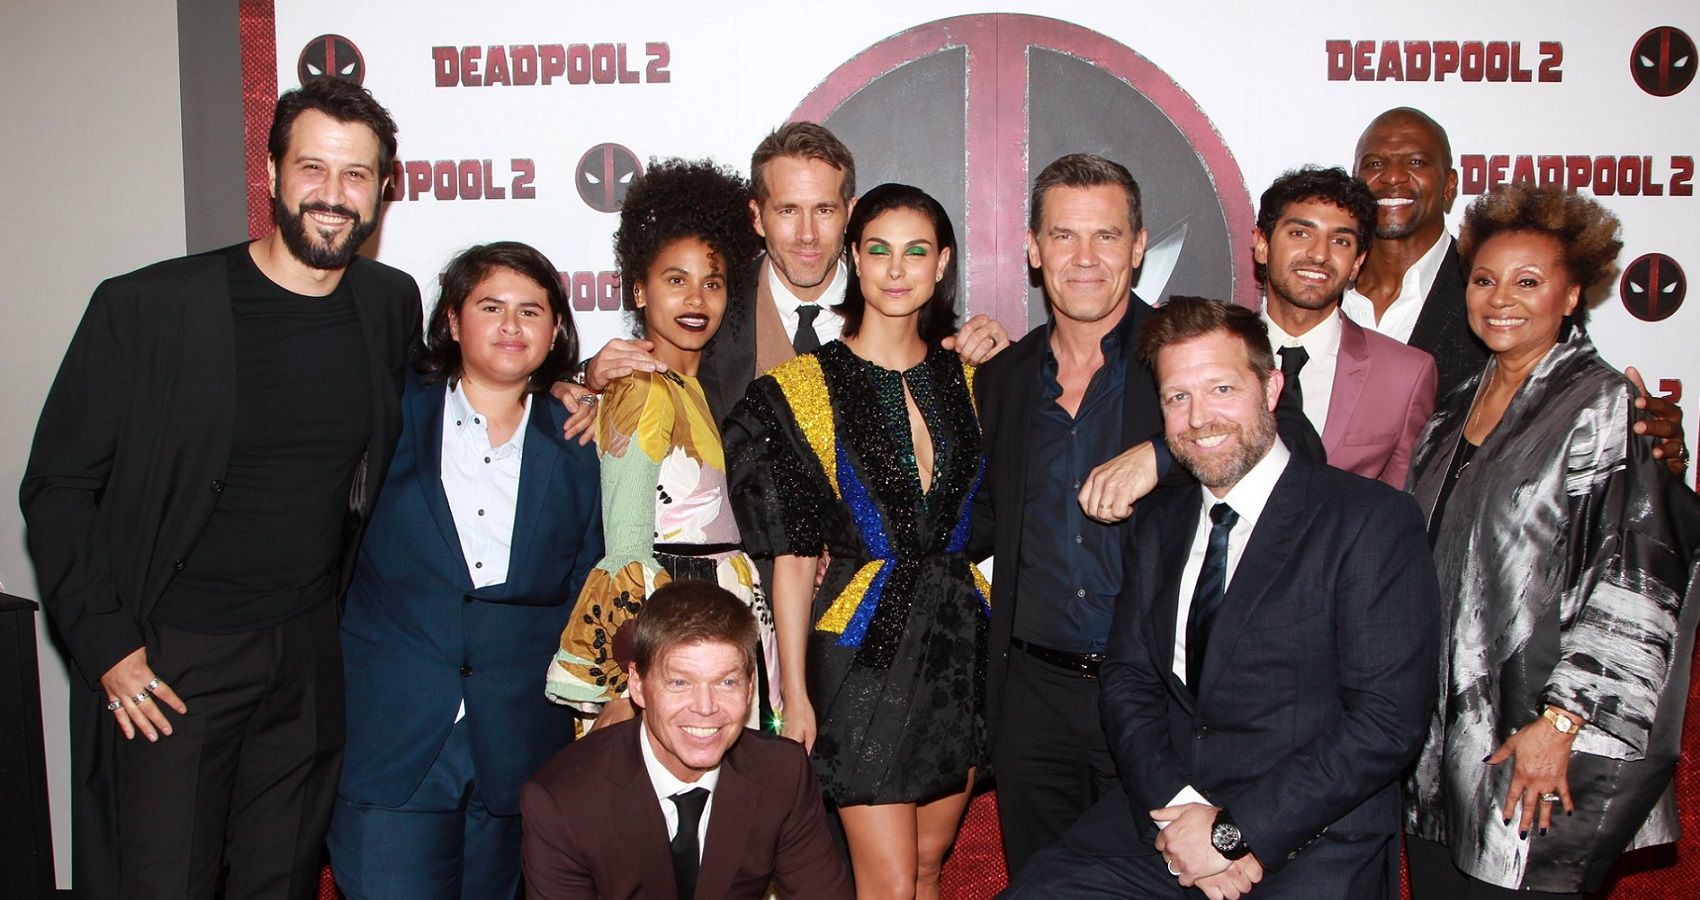 Esta estrela de 'Deadpool' foi anunciada publicamente por seu ex, aqui está o porquê